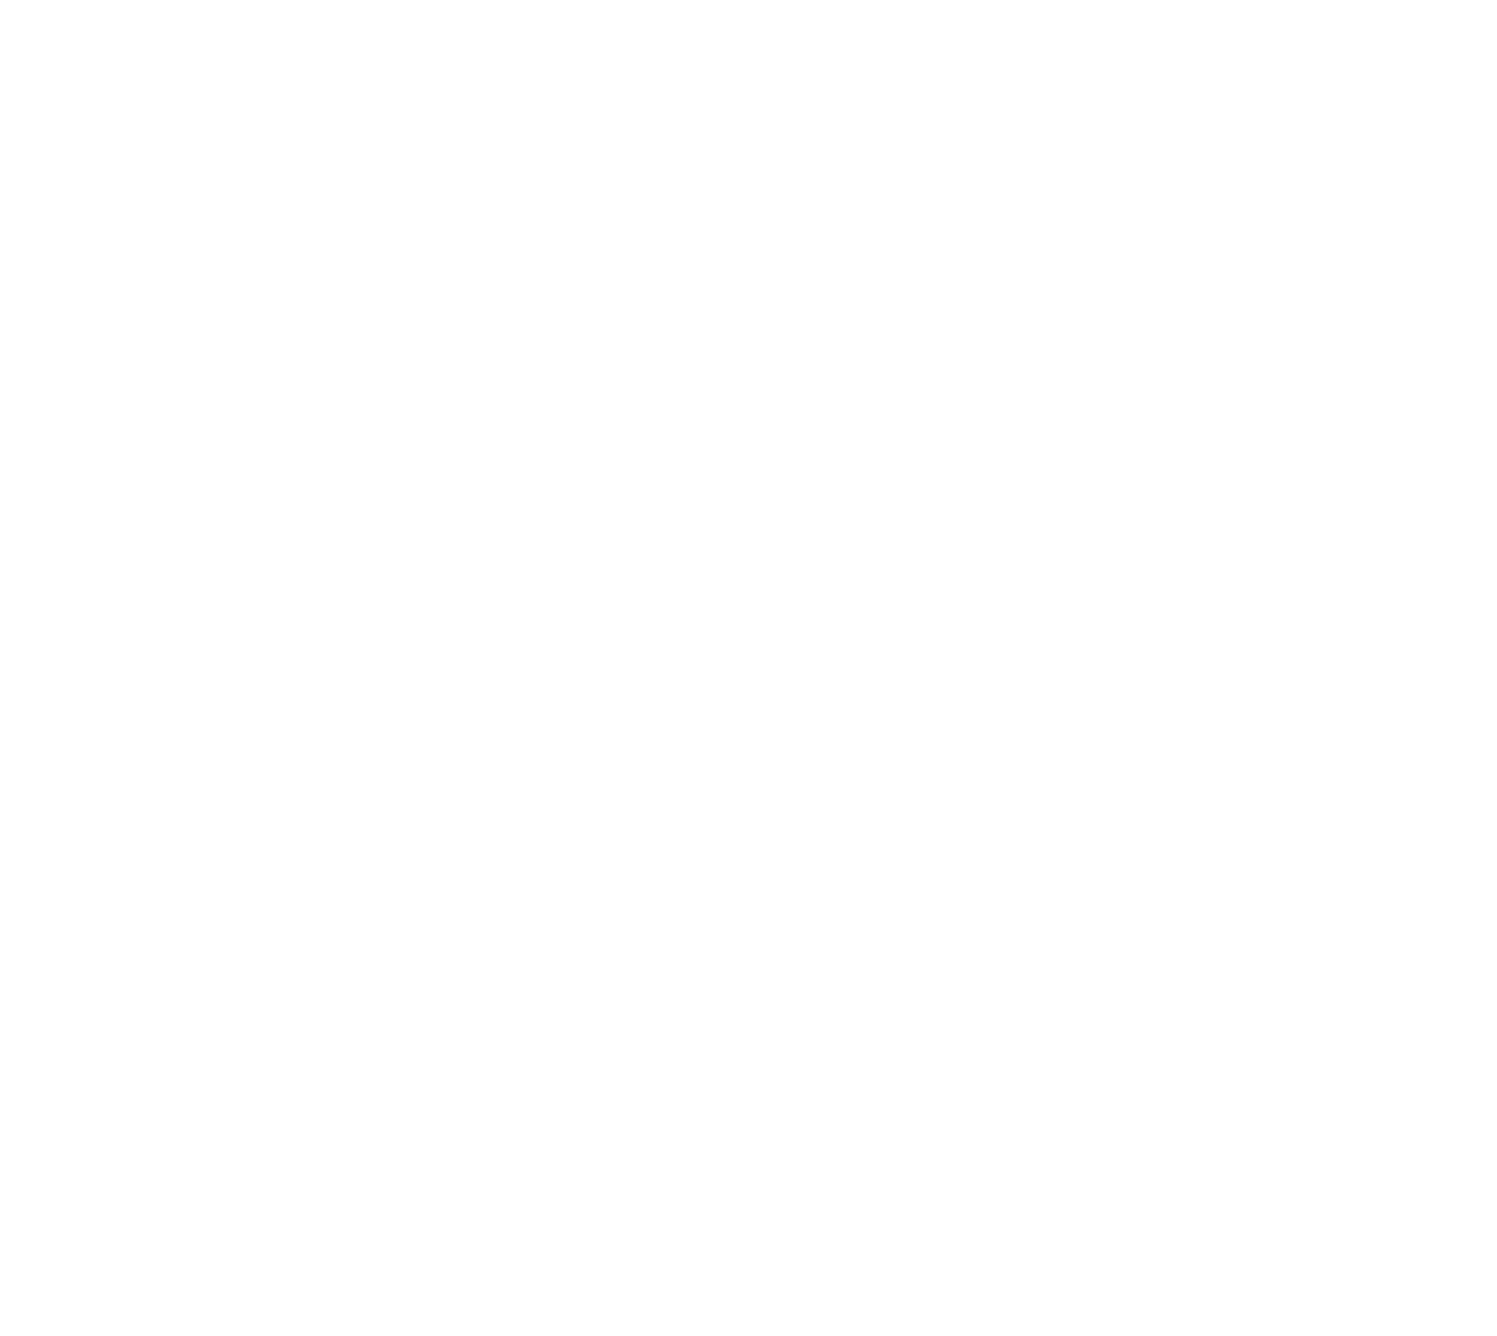 FIREFIT_LOGO_1000